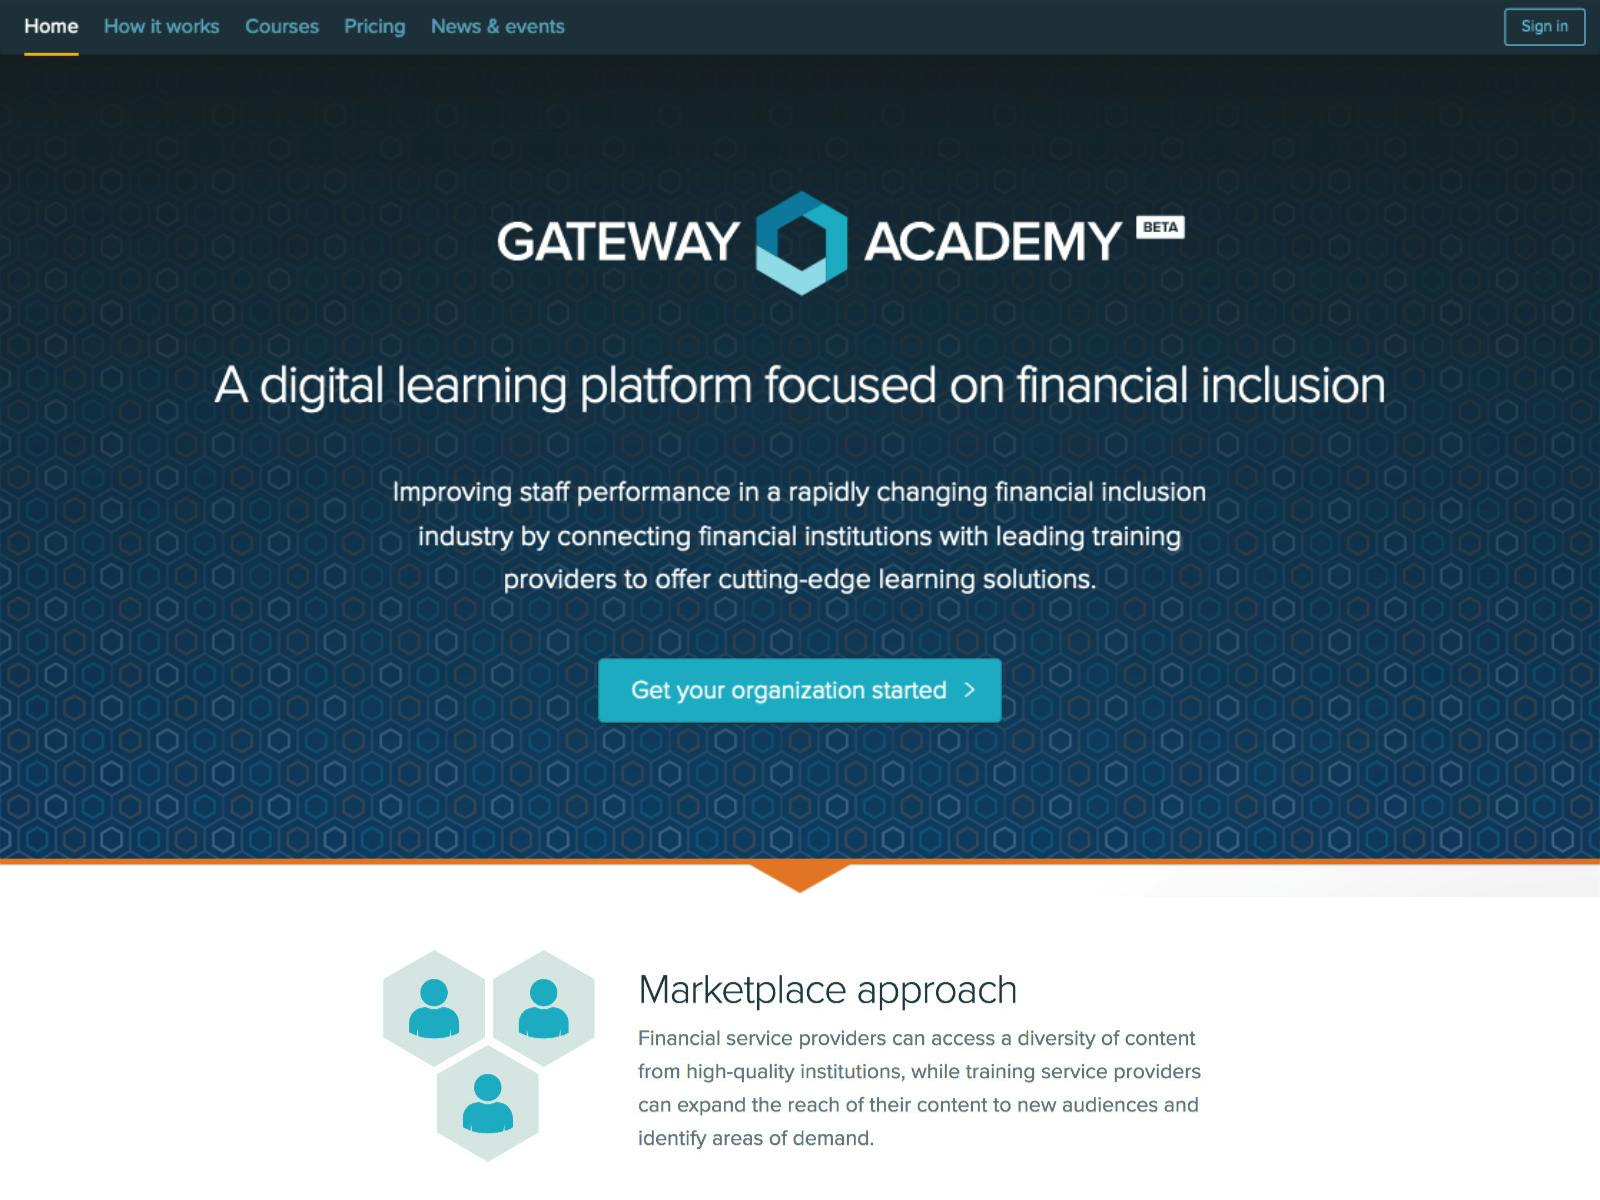 Gateway Academy’s marketing site